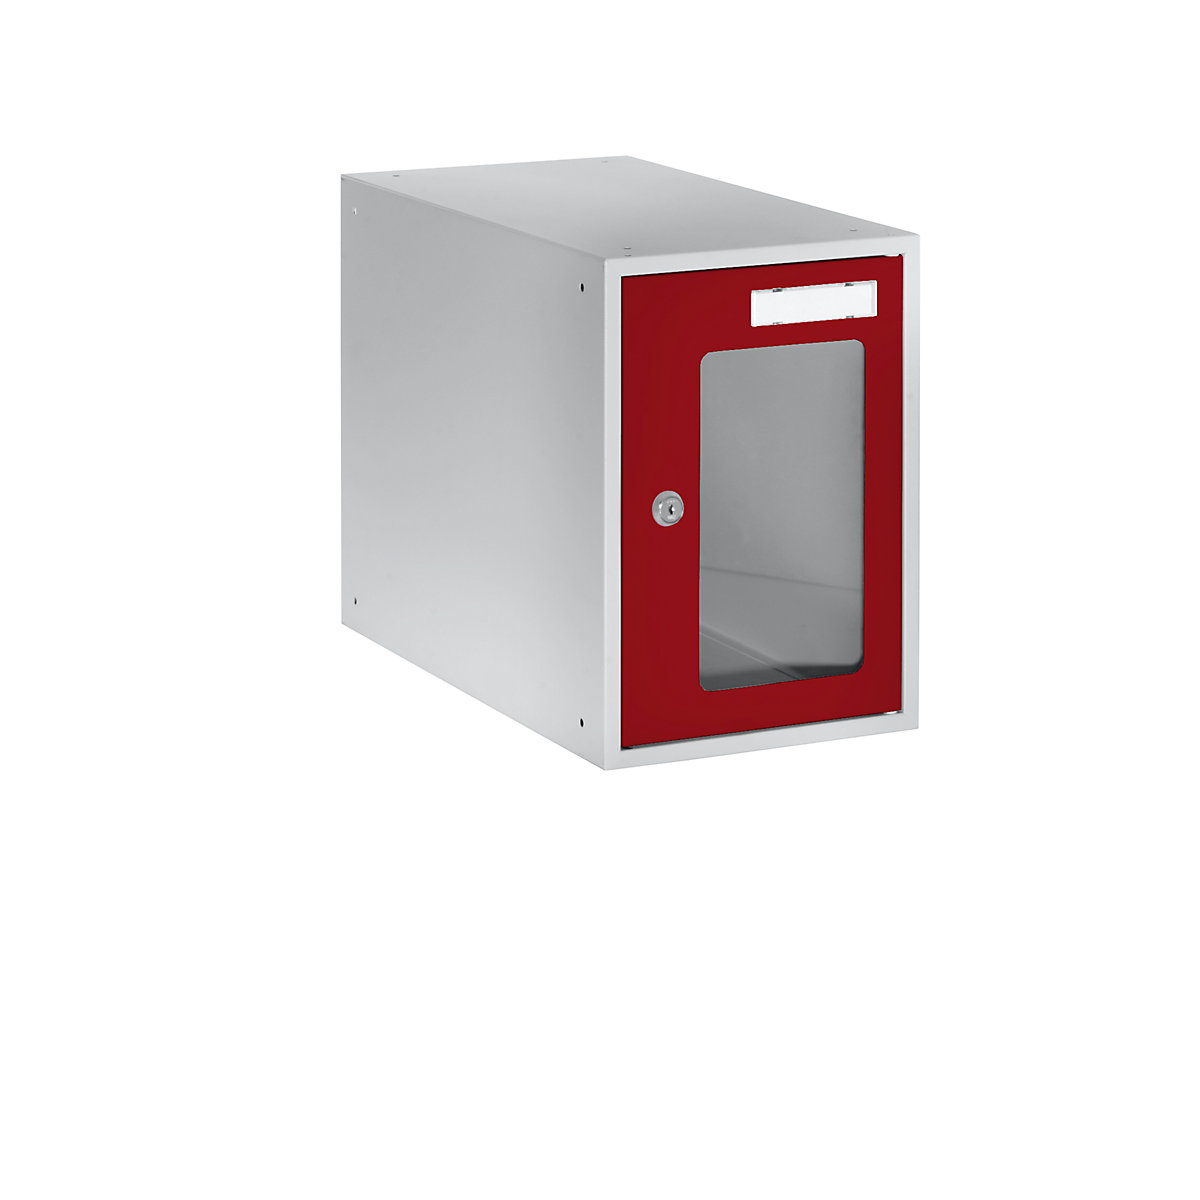 EUROKRAFTbasic – Casier verrouillable vitré, h x l x p 350 x 250 x 450 mm, cadre de porte rouge feu RAL 3000